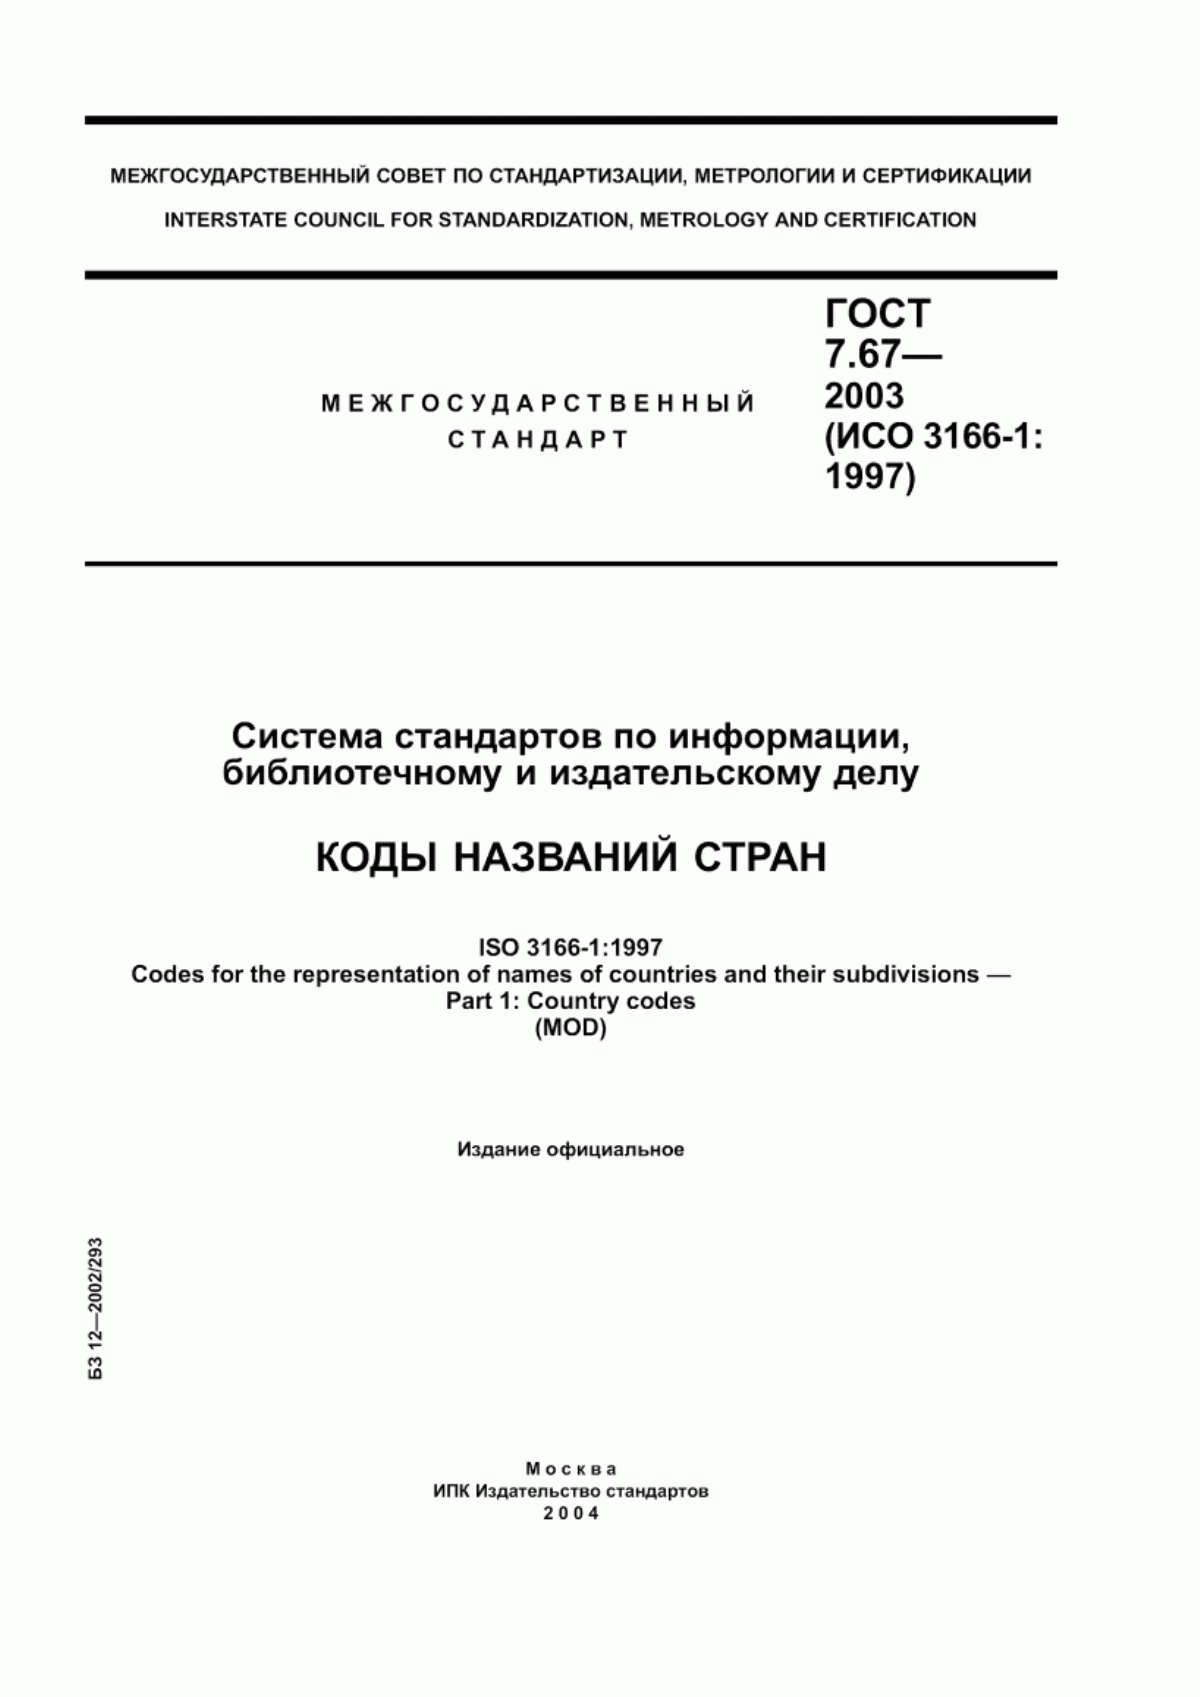 ГОСТ 7.67-2003 Система стандартов по информации, библиотечному и издательскому делу. Коды названий стран